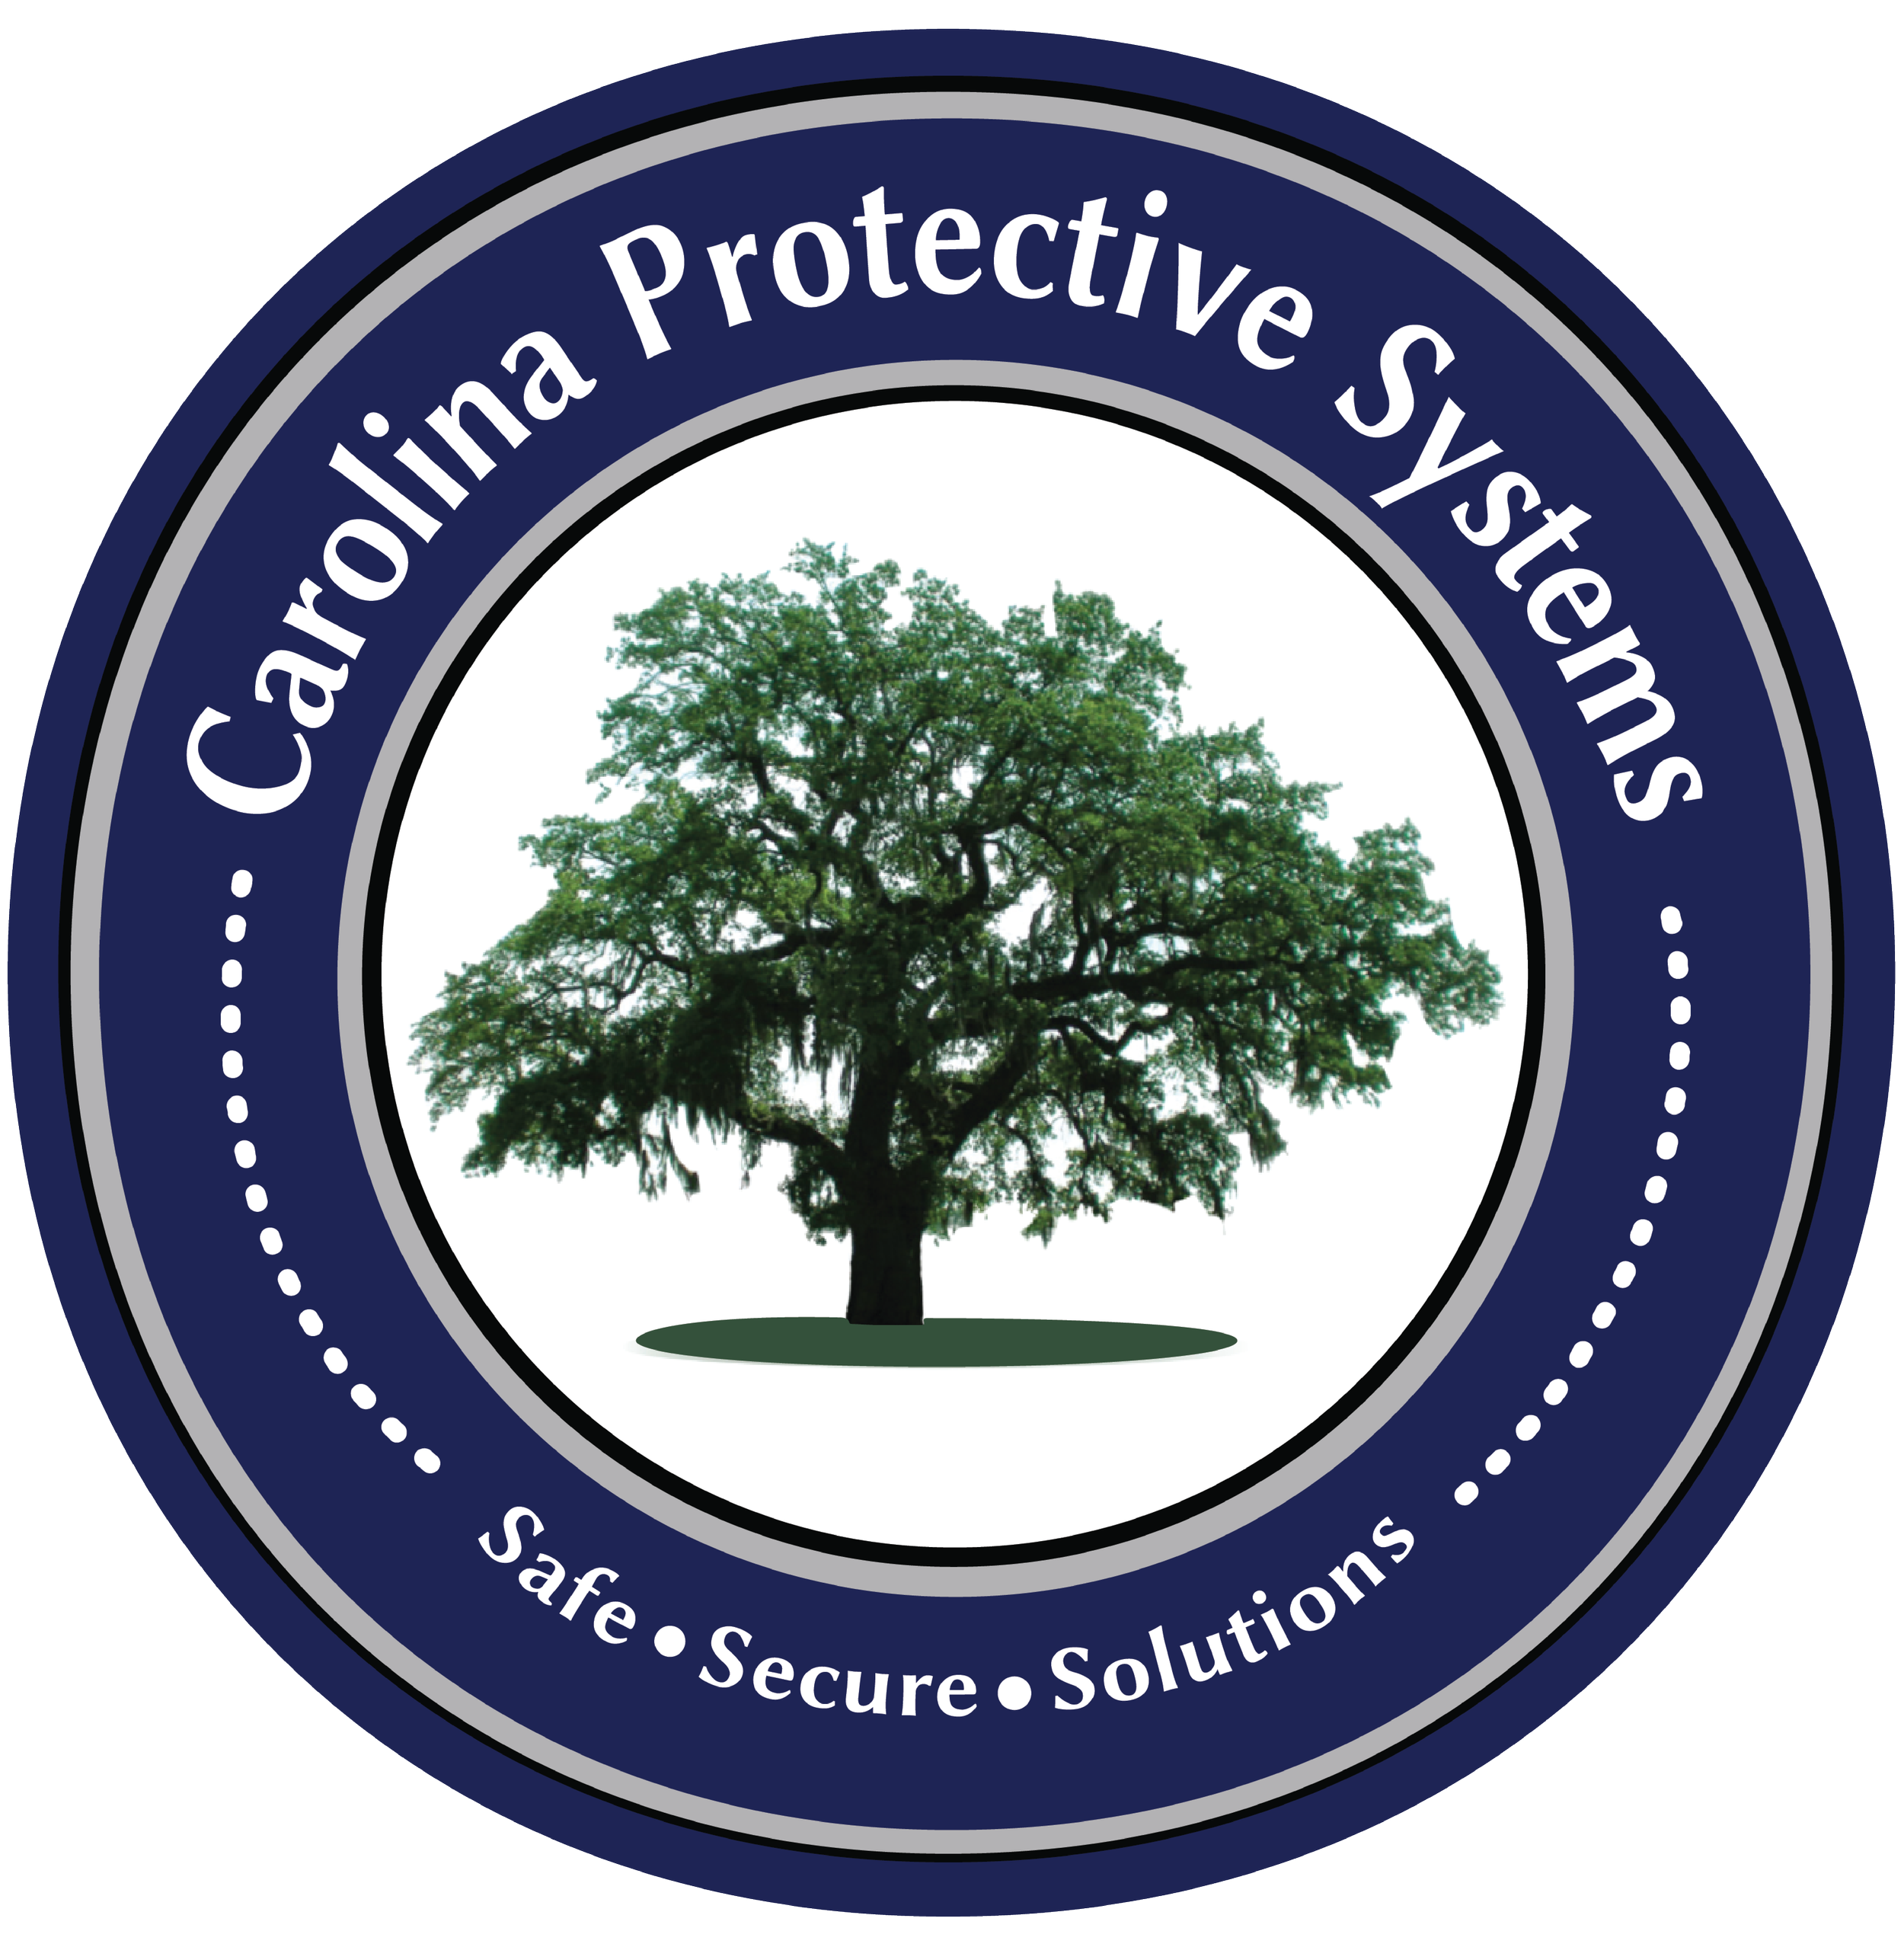 Carolina Protective Systems